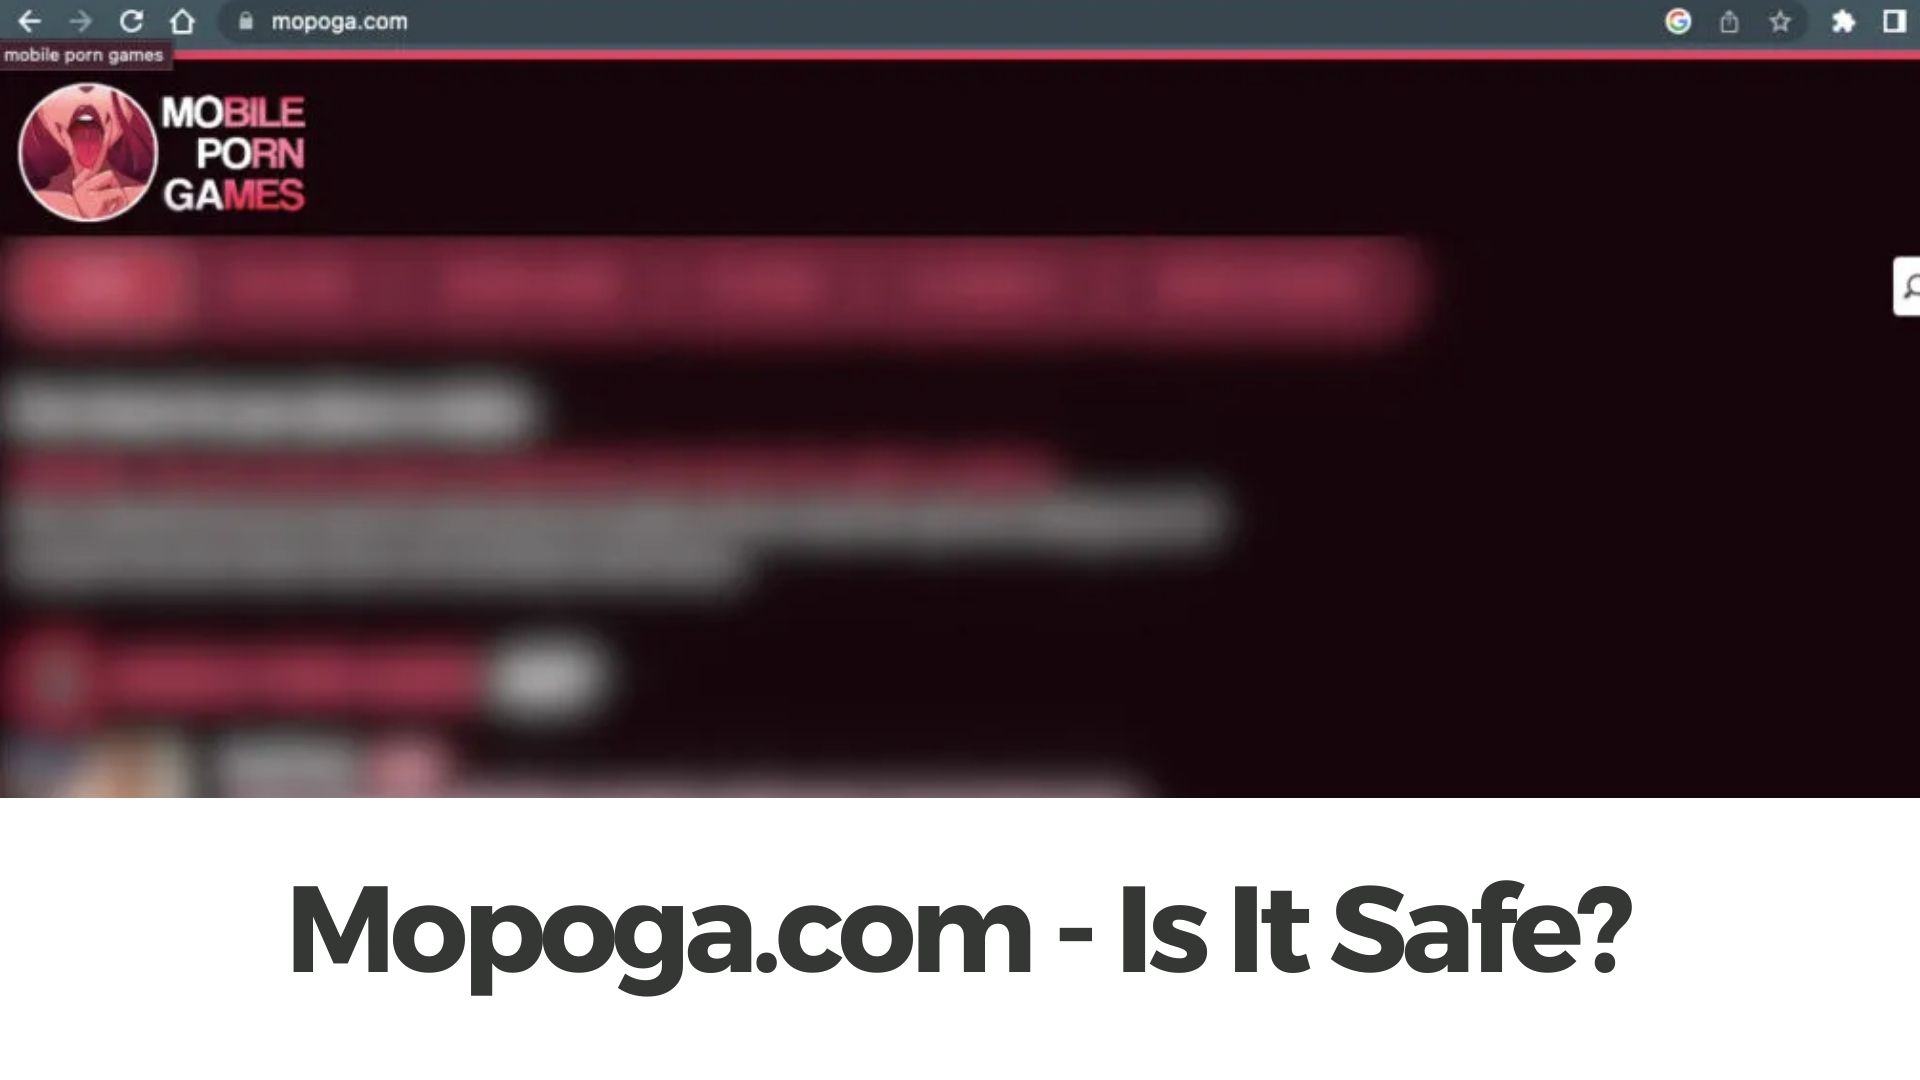 Mopoga.com